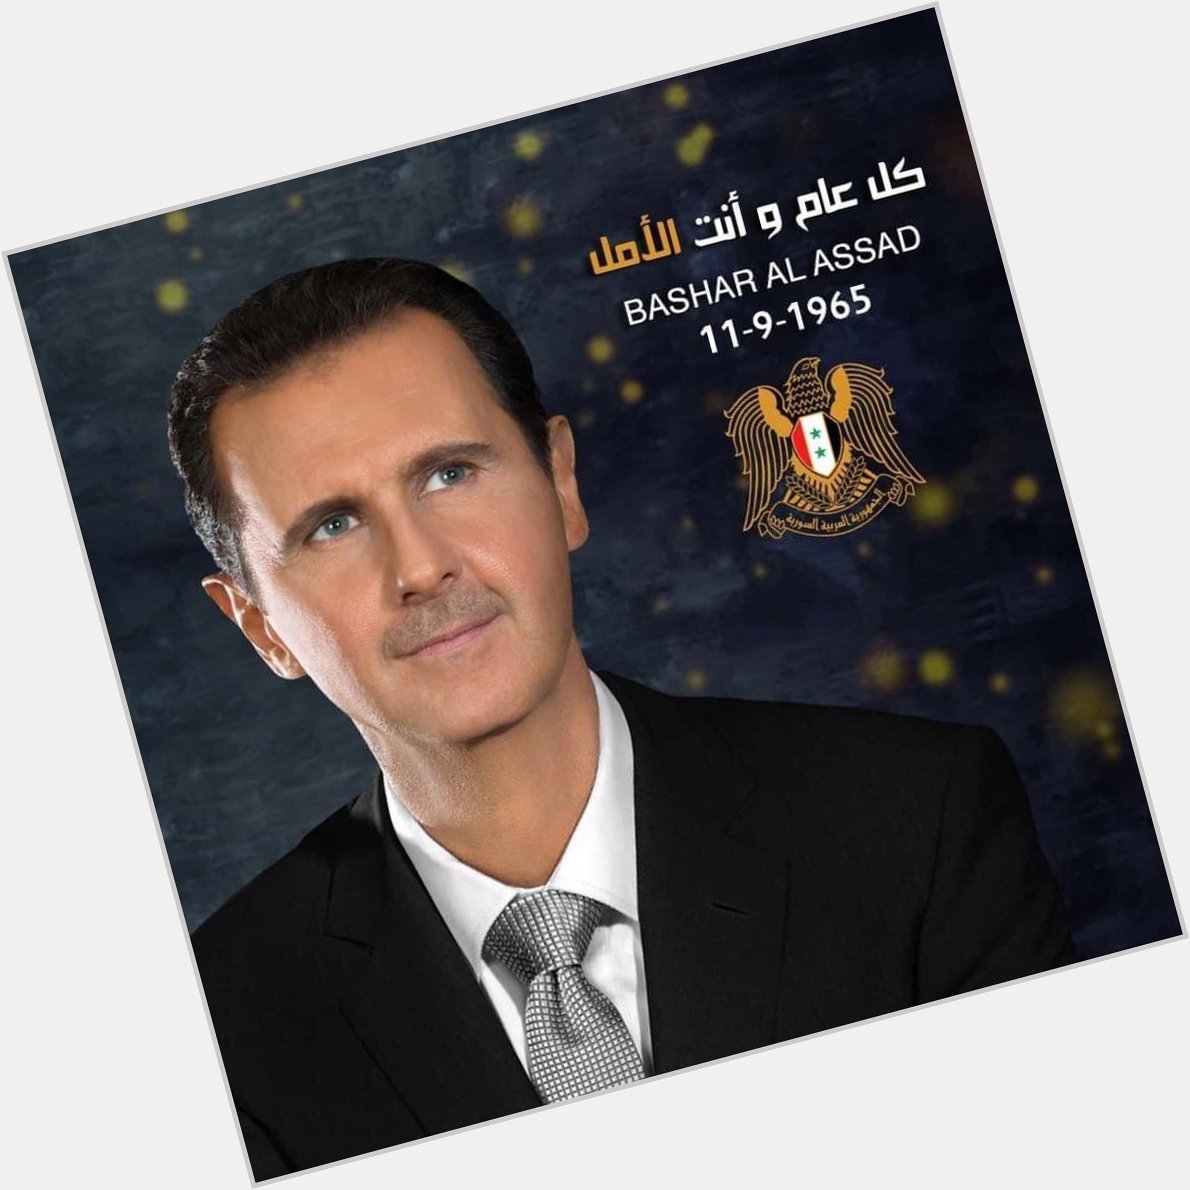 Happy birthday to President Bashar al-Assad 